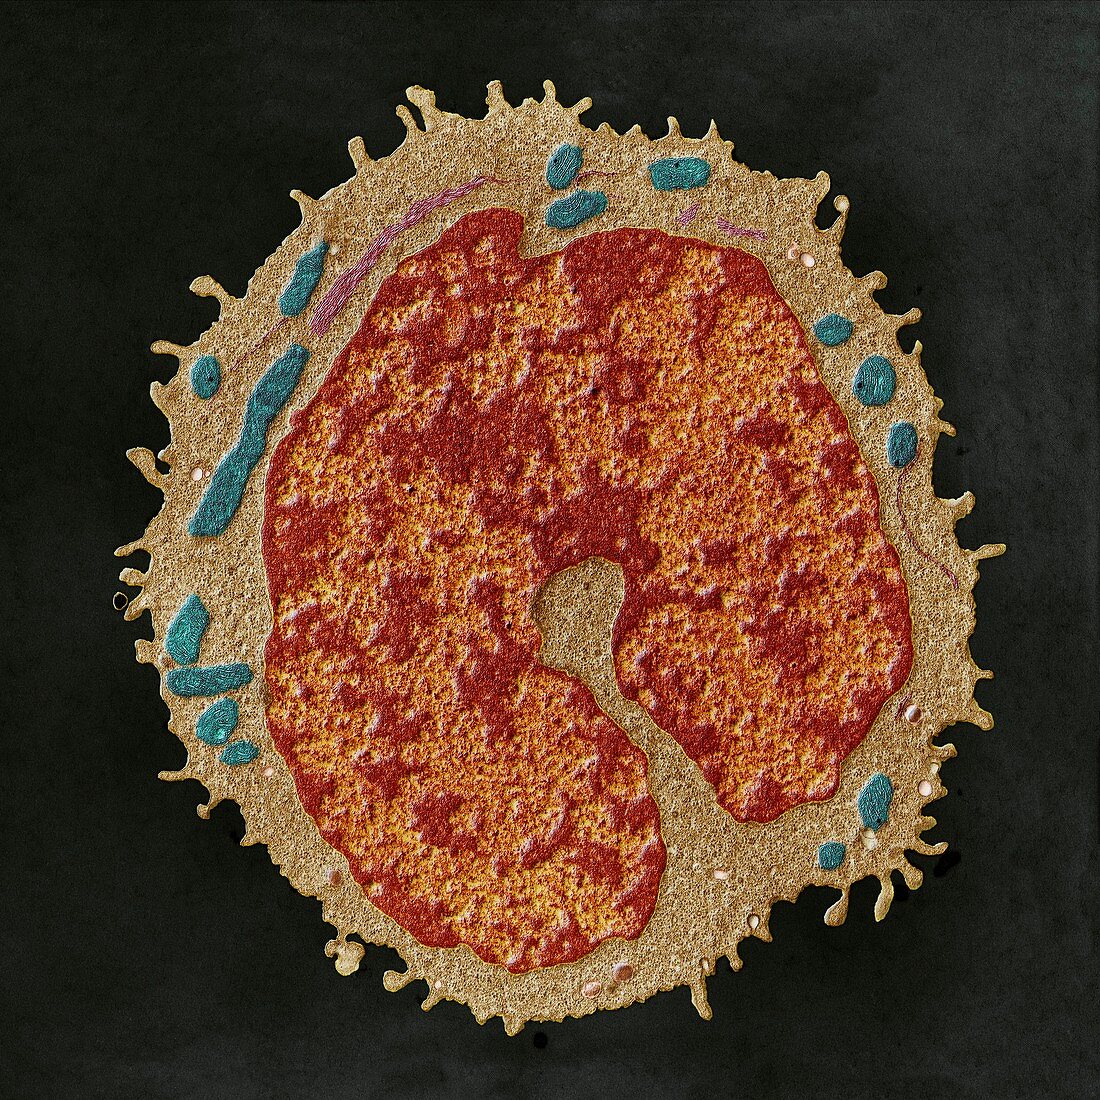 Monocyt 18kx - Monocyt, weisses Blutkorperchen, 18 000-1